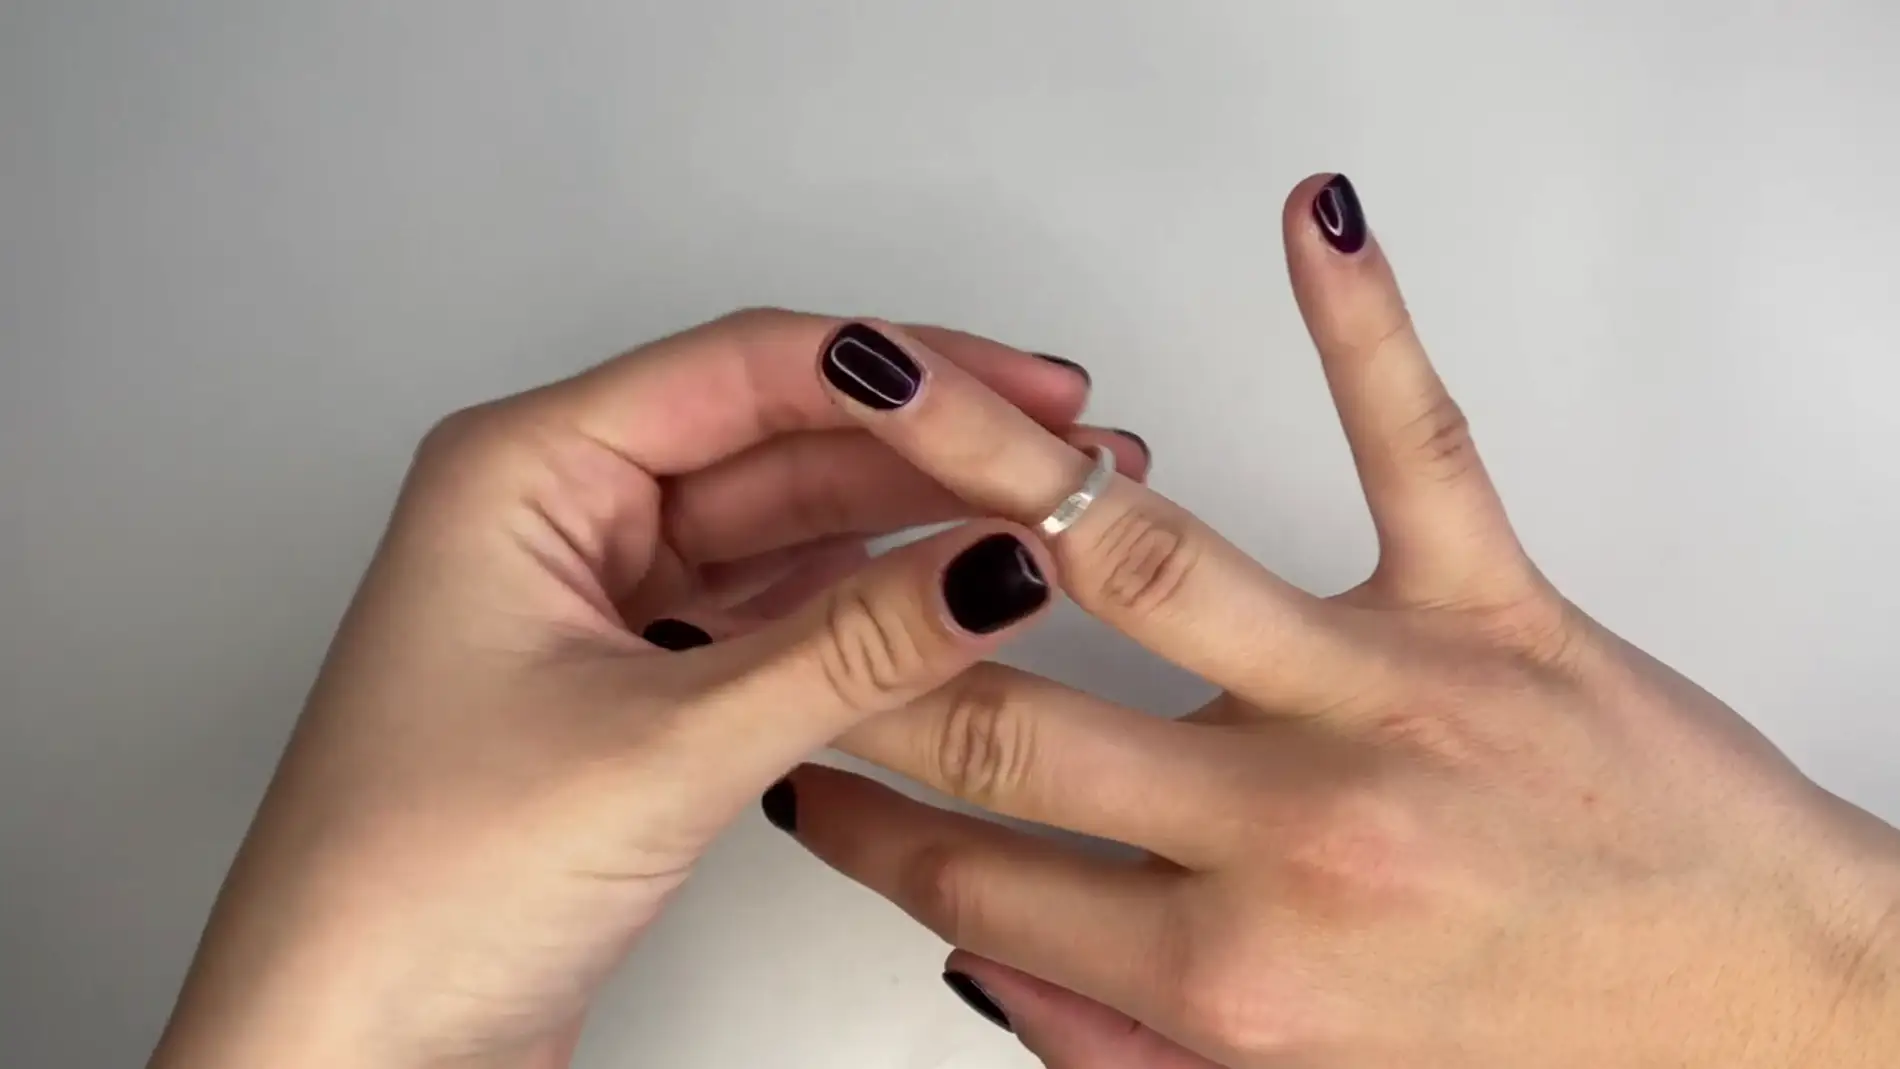 Cómo usar Ring Sizer, la app que te ayuda a sacar las medidas de tu dedo  para anillos?, Smartphone